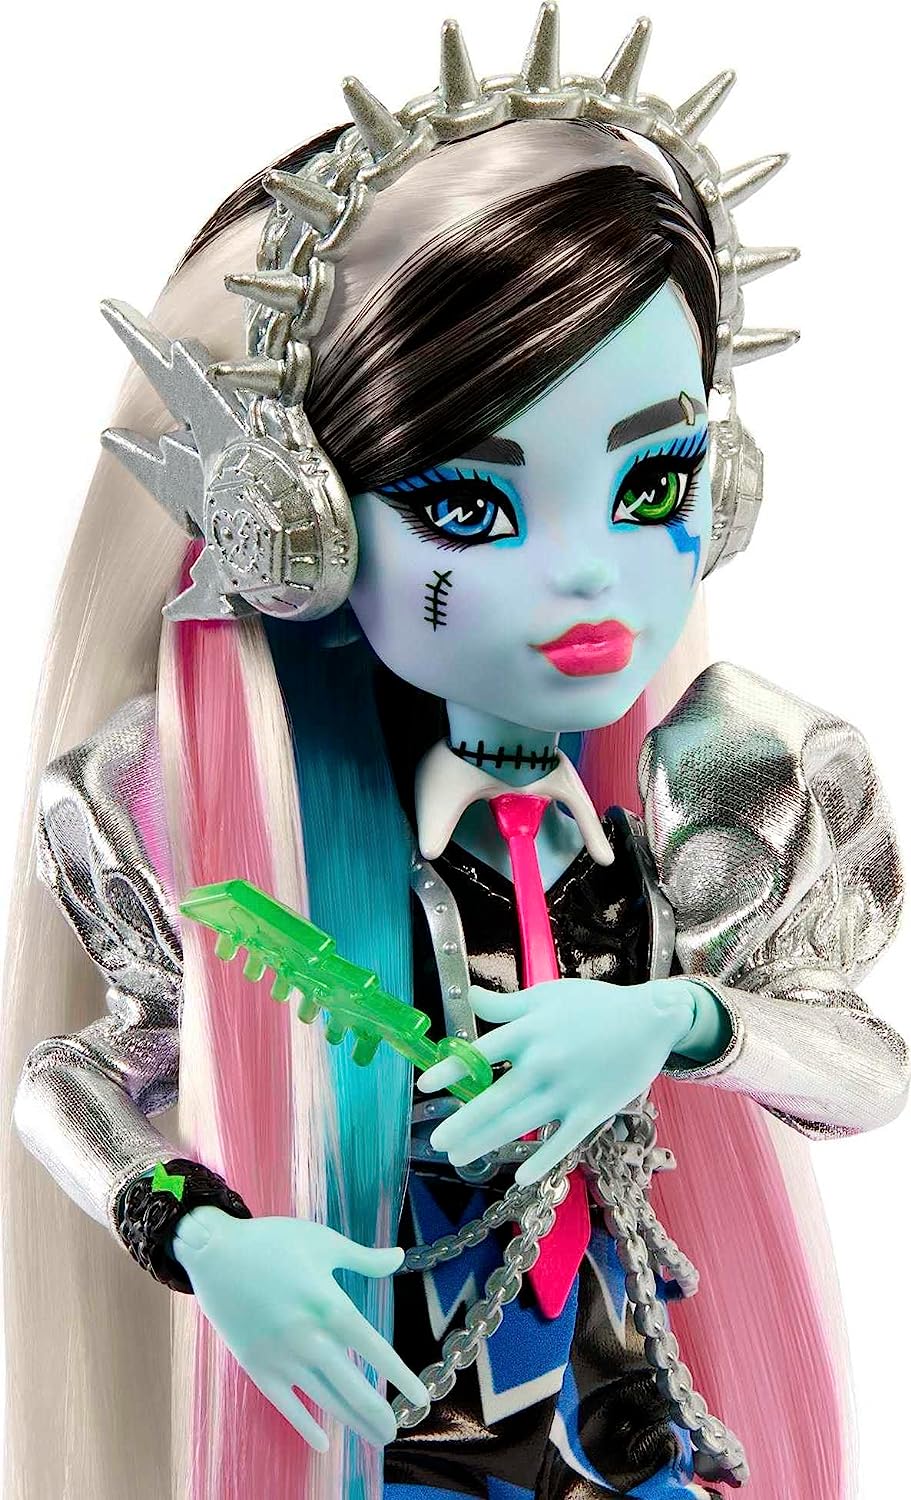 Monster High Frankie Doll